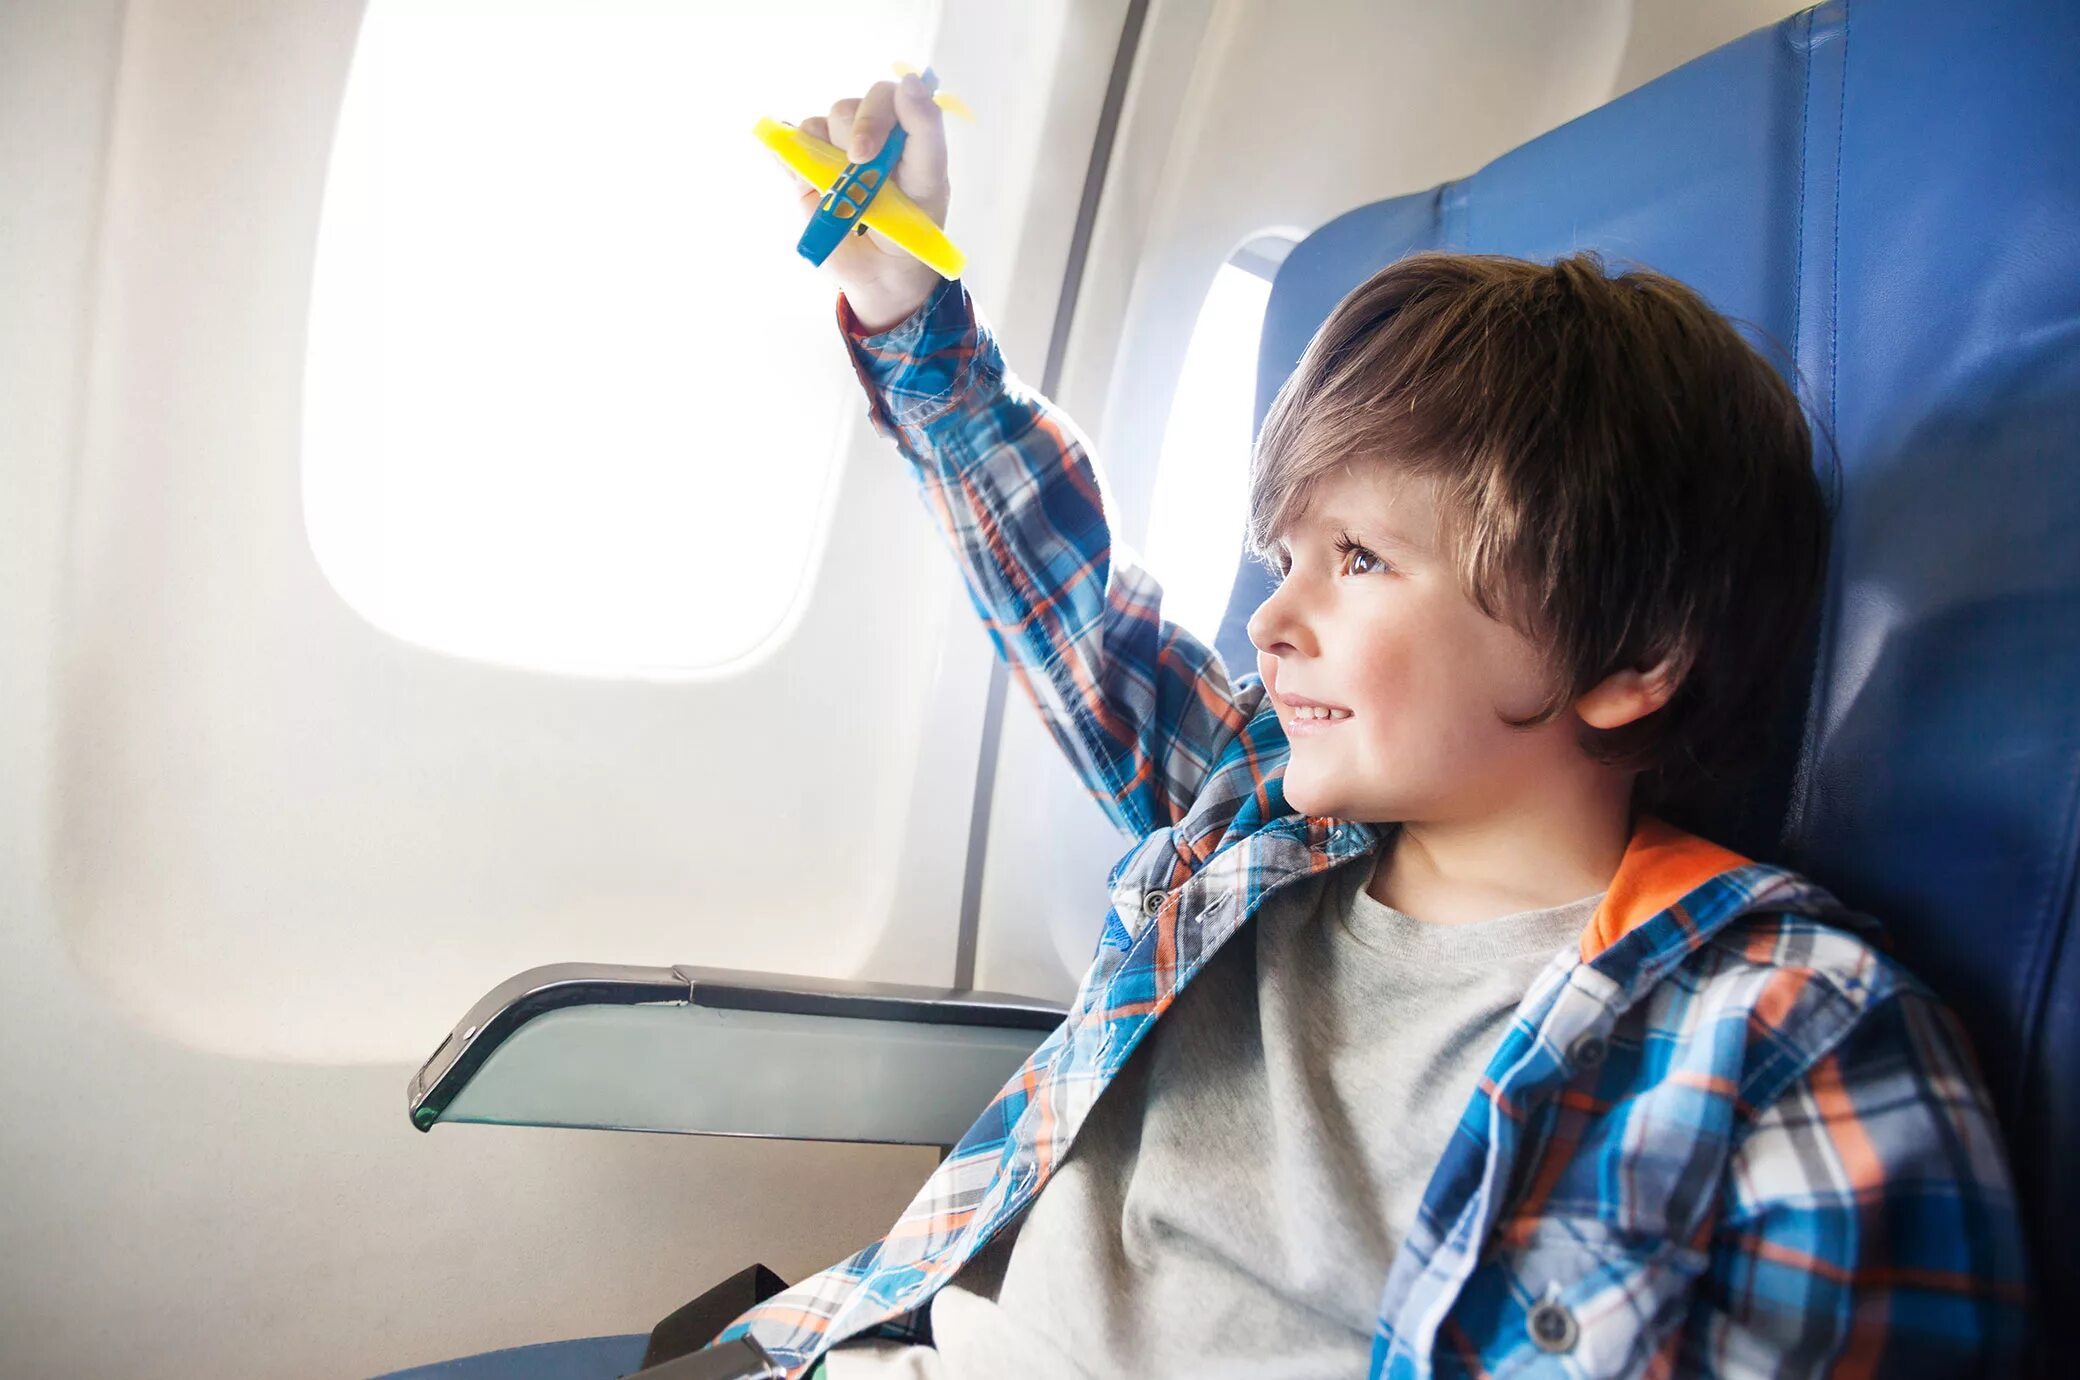 Самолет для детей. Для мальчиков самолёты. Путешествие на самолете для детей. Дети путешествуют. Ребенка самолетом без взрослых